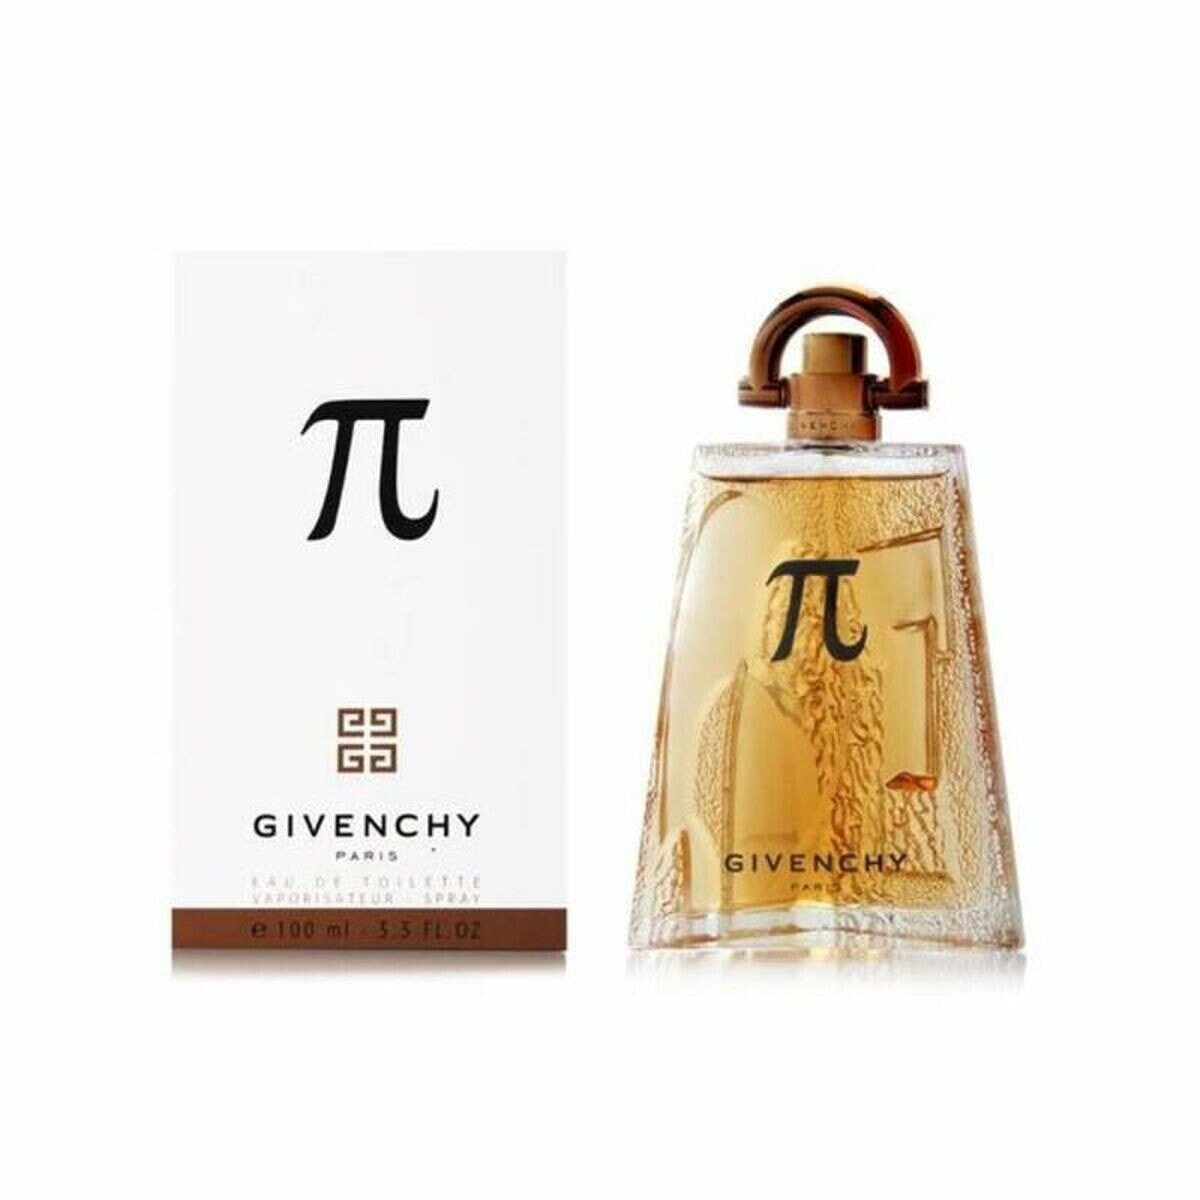 Givenchy Pi EDT 100 ml